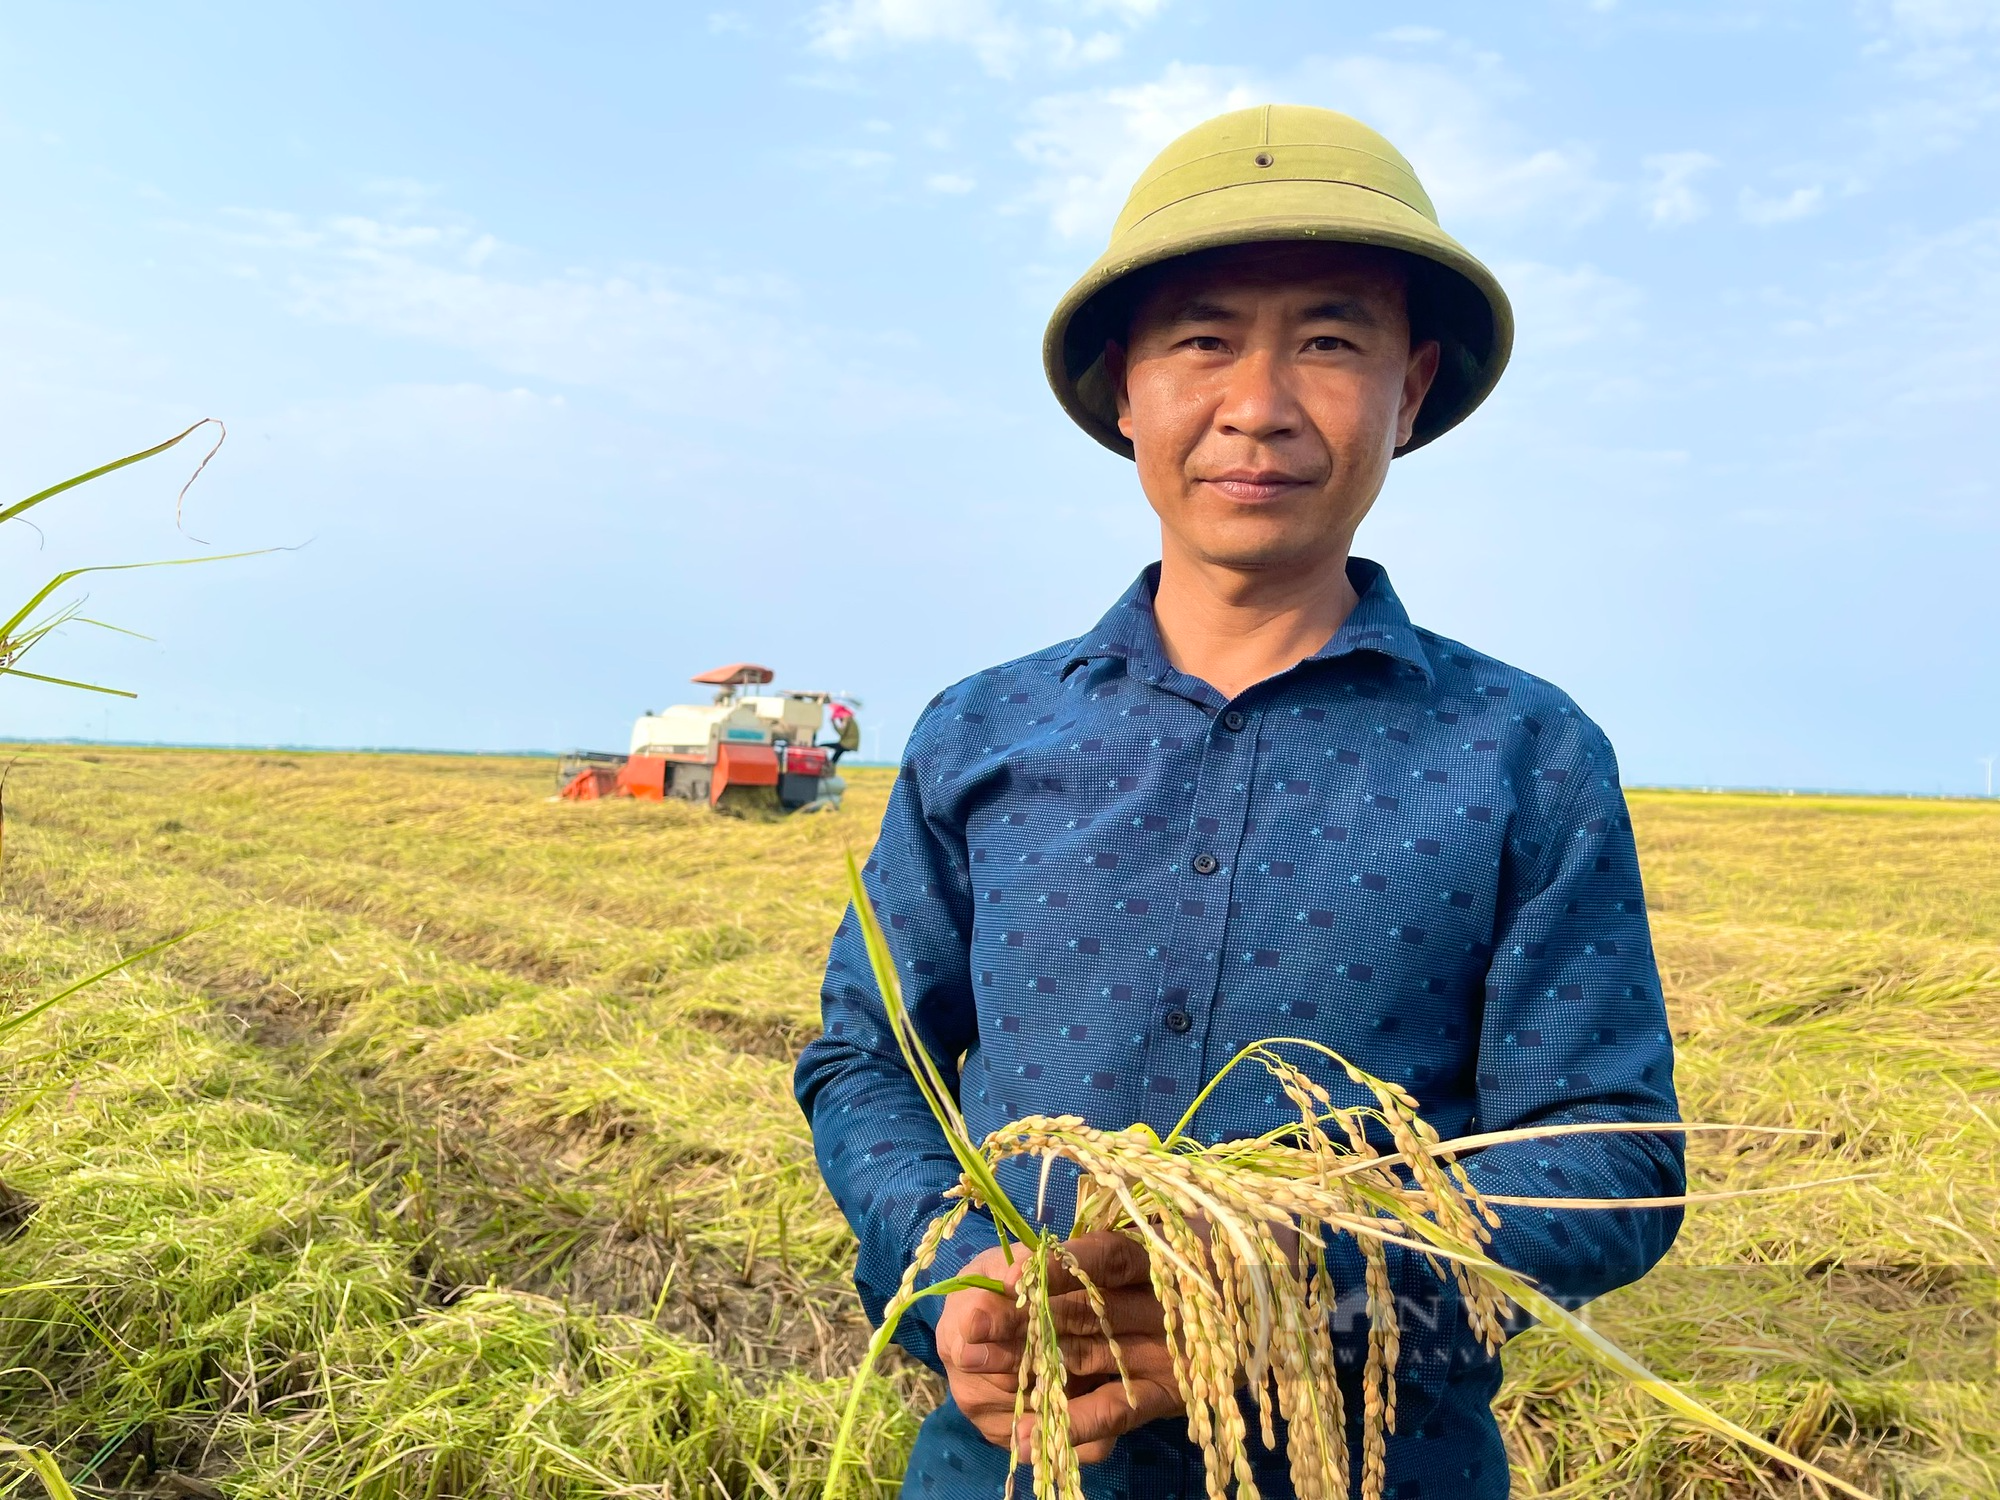 Quảng Bình: Công ty sông Gianh đồng hành cùng nông dân trồng lúa, giông lốc làm ngã rạp liền tới giúp gặt, thu mua luôn - Ảnh 3.